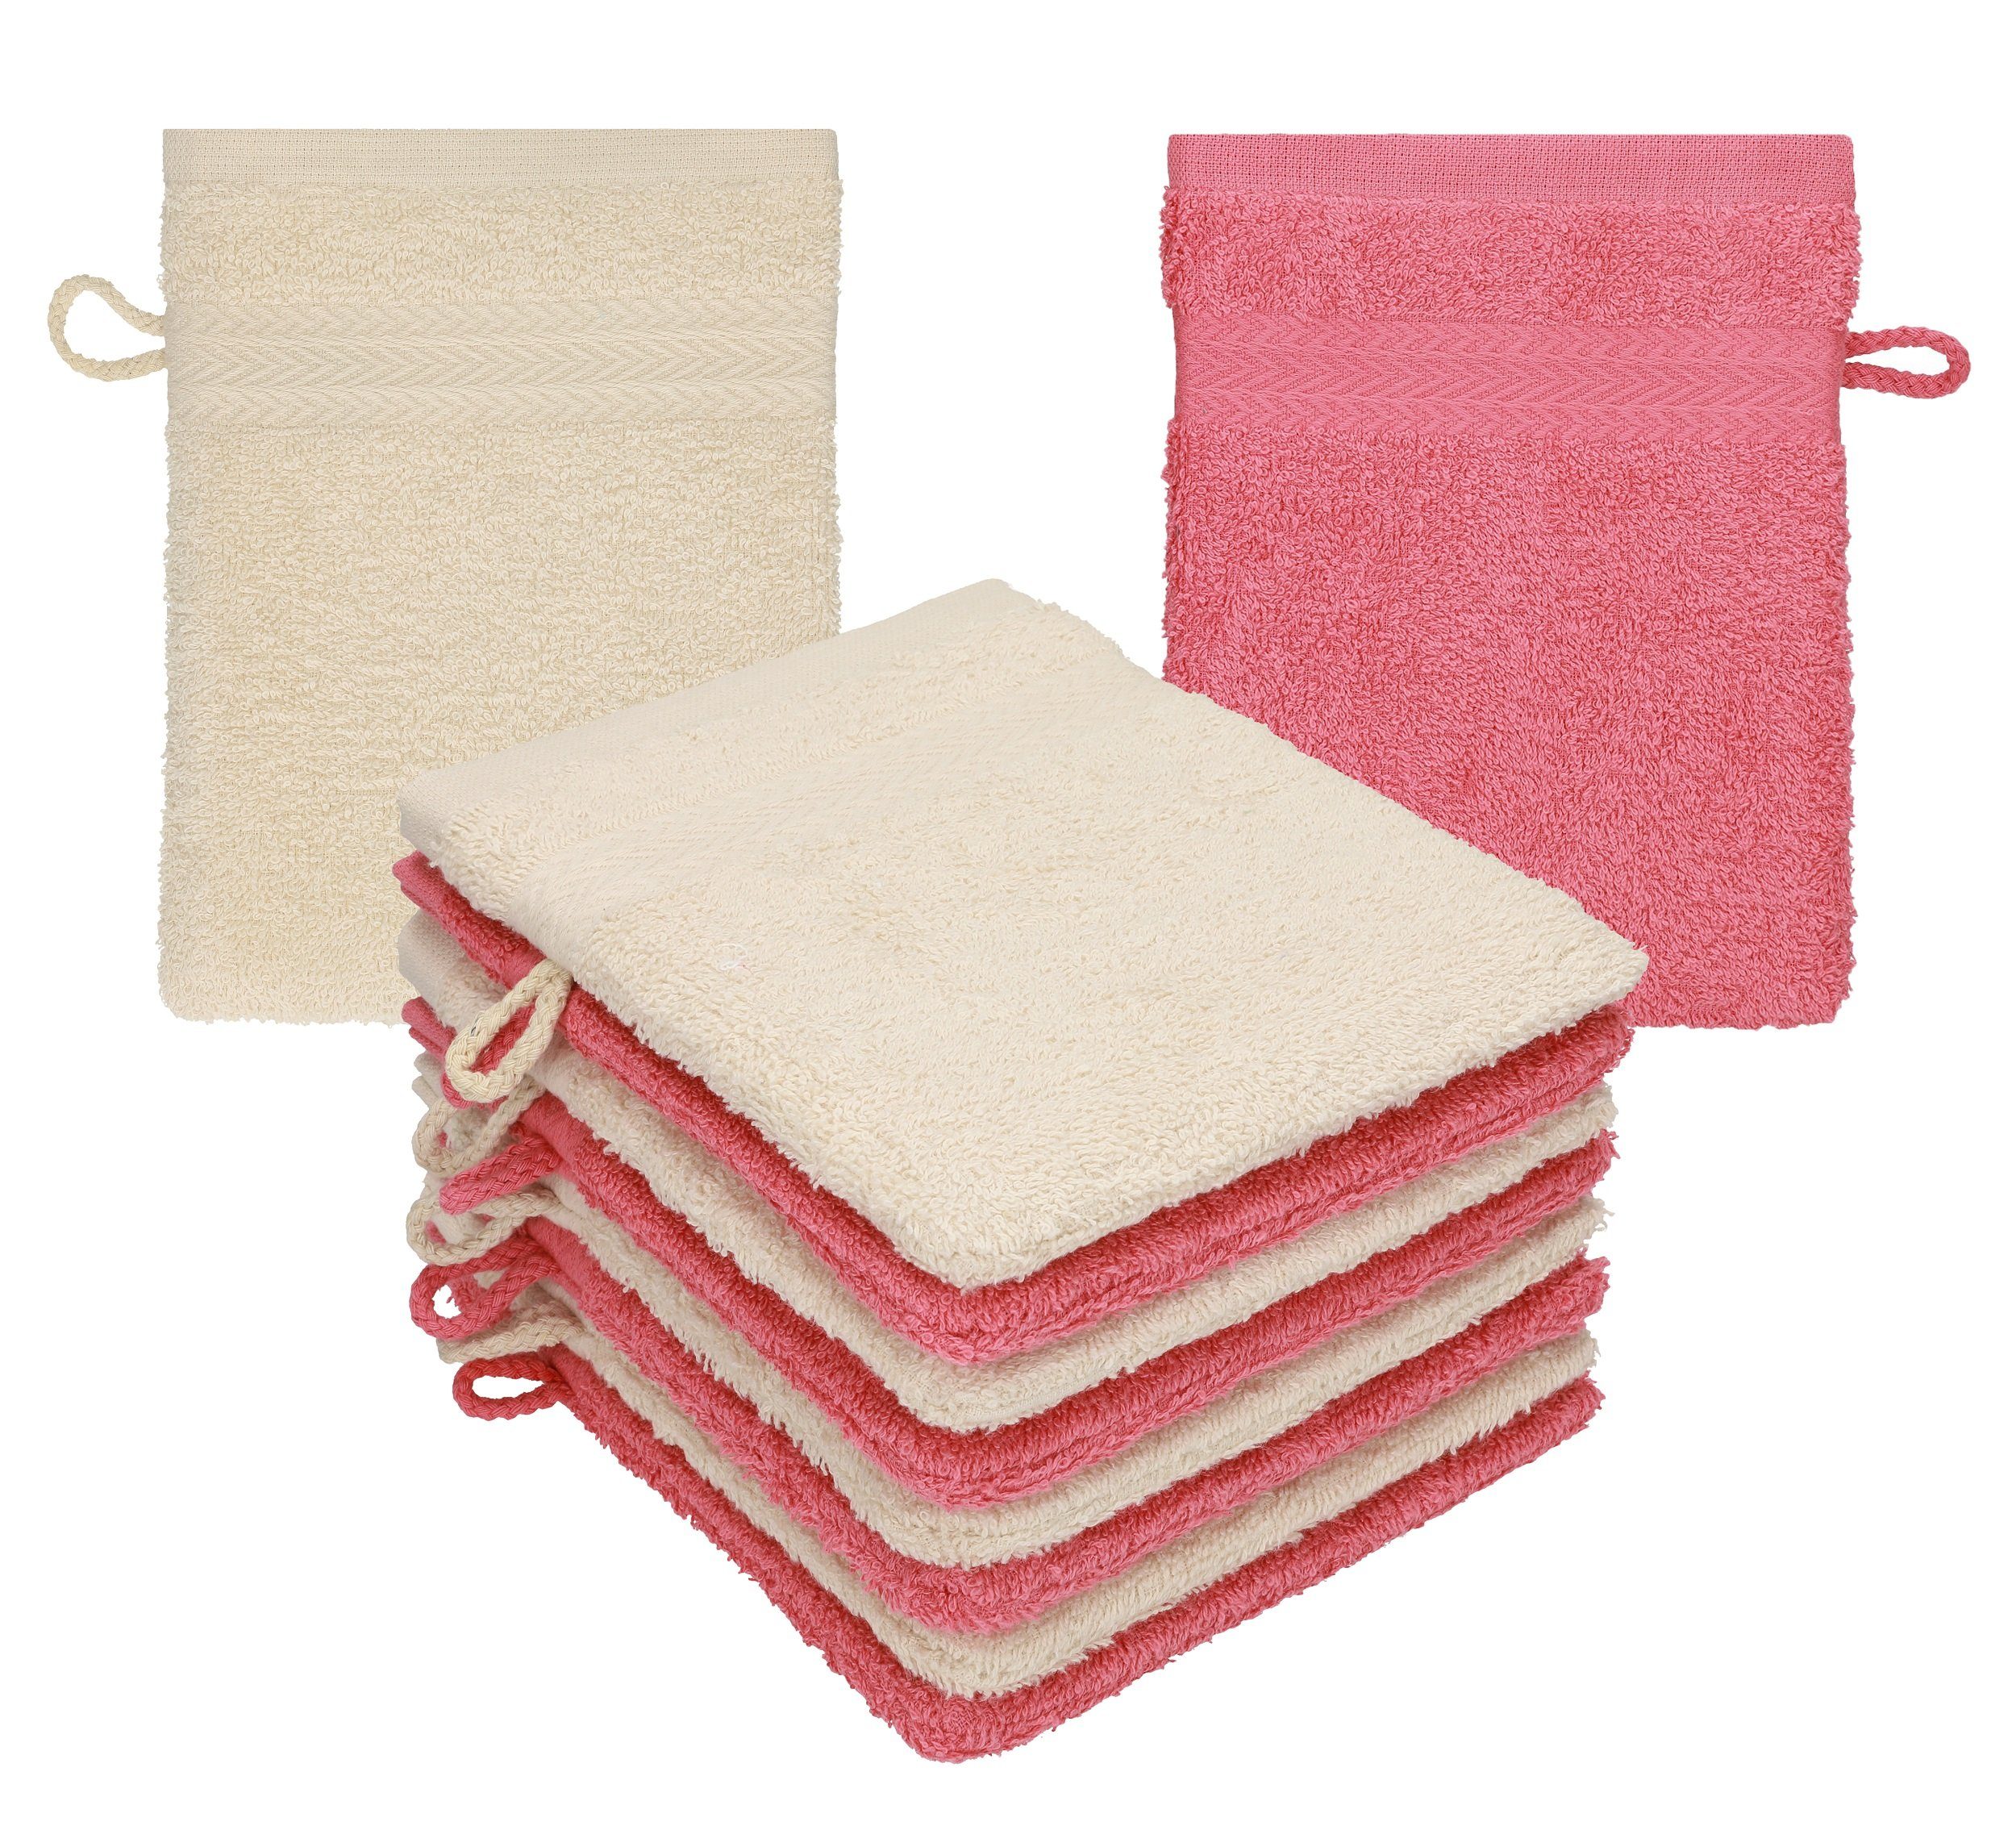 Betz Waschhandschuh 10 Stück Waschhandschuhe Premium 100% Baumwolle Waschlappen Set 16x21 cm Farbe Sand - Himbeere